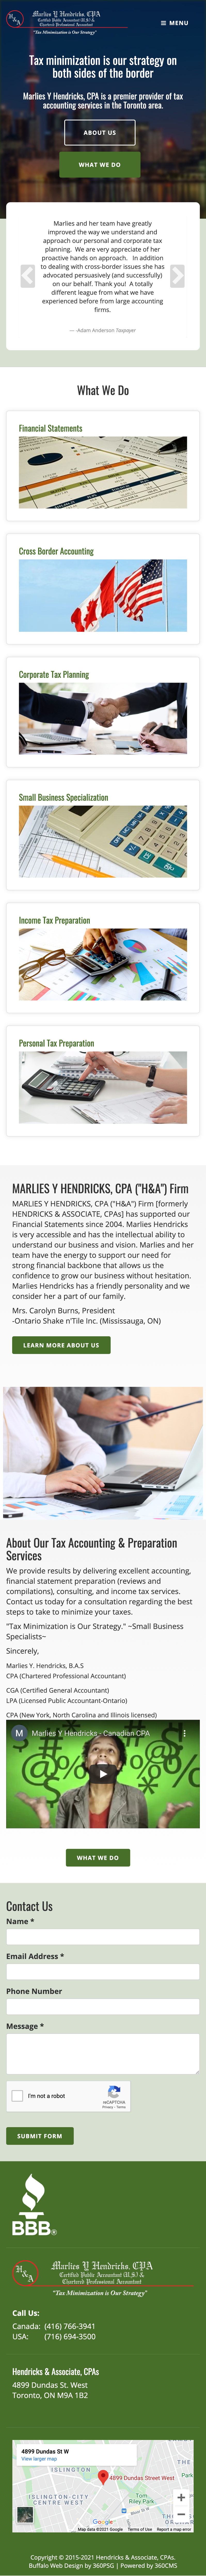 Hendricks & Associate, CPAs Website - Mobile